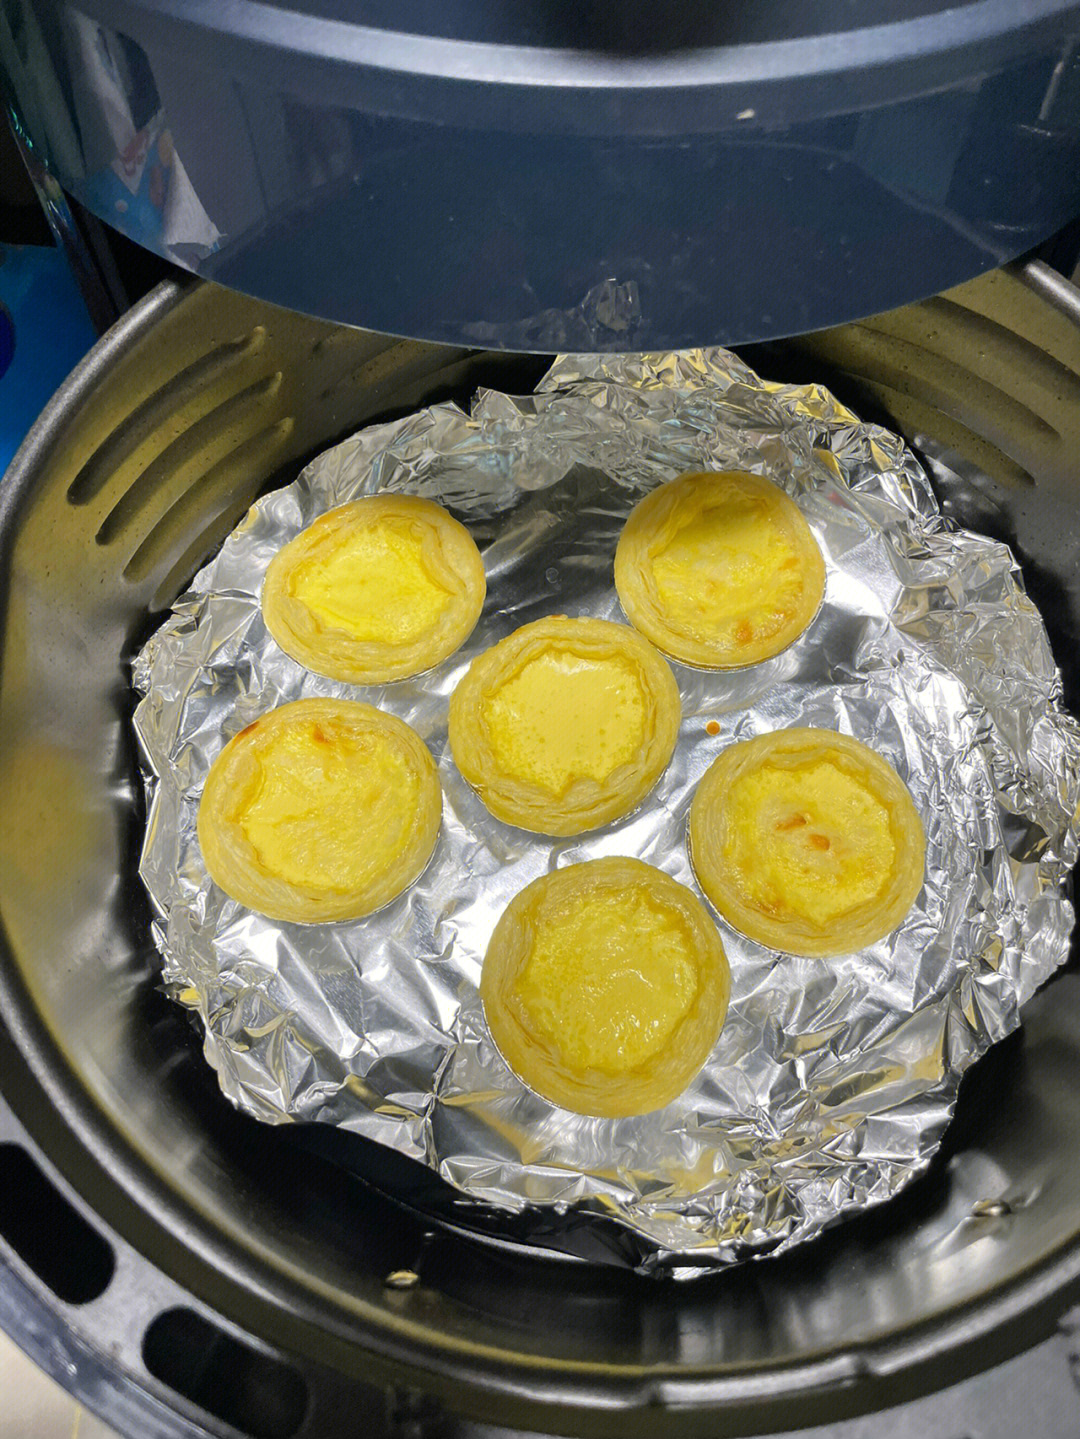 蛋挞液配方制作方法图片